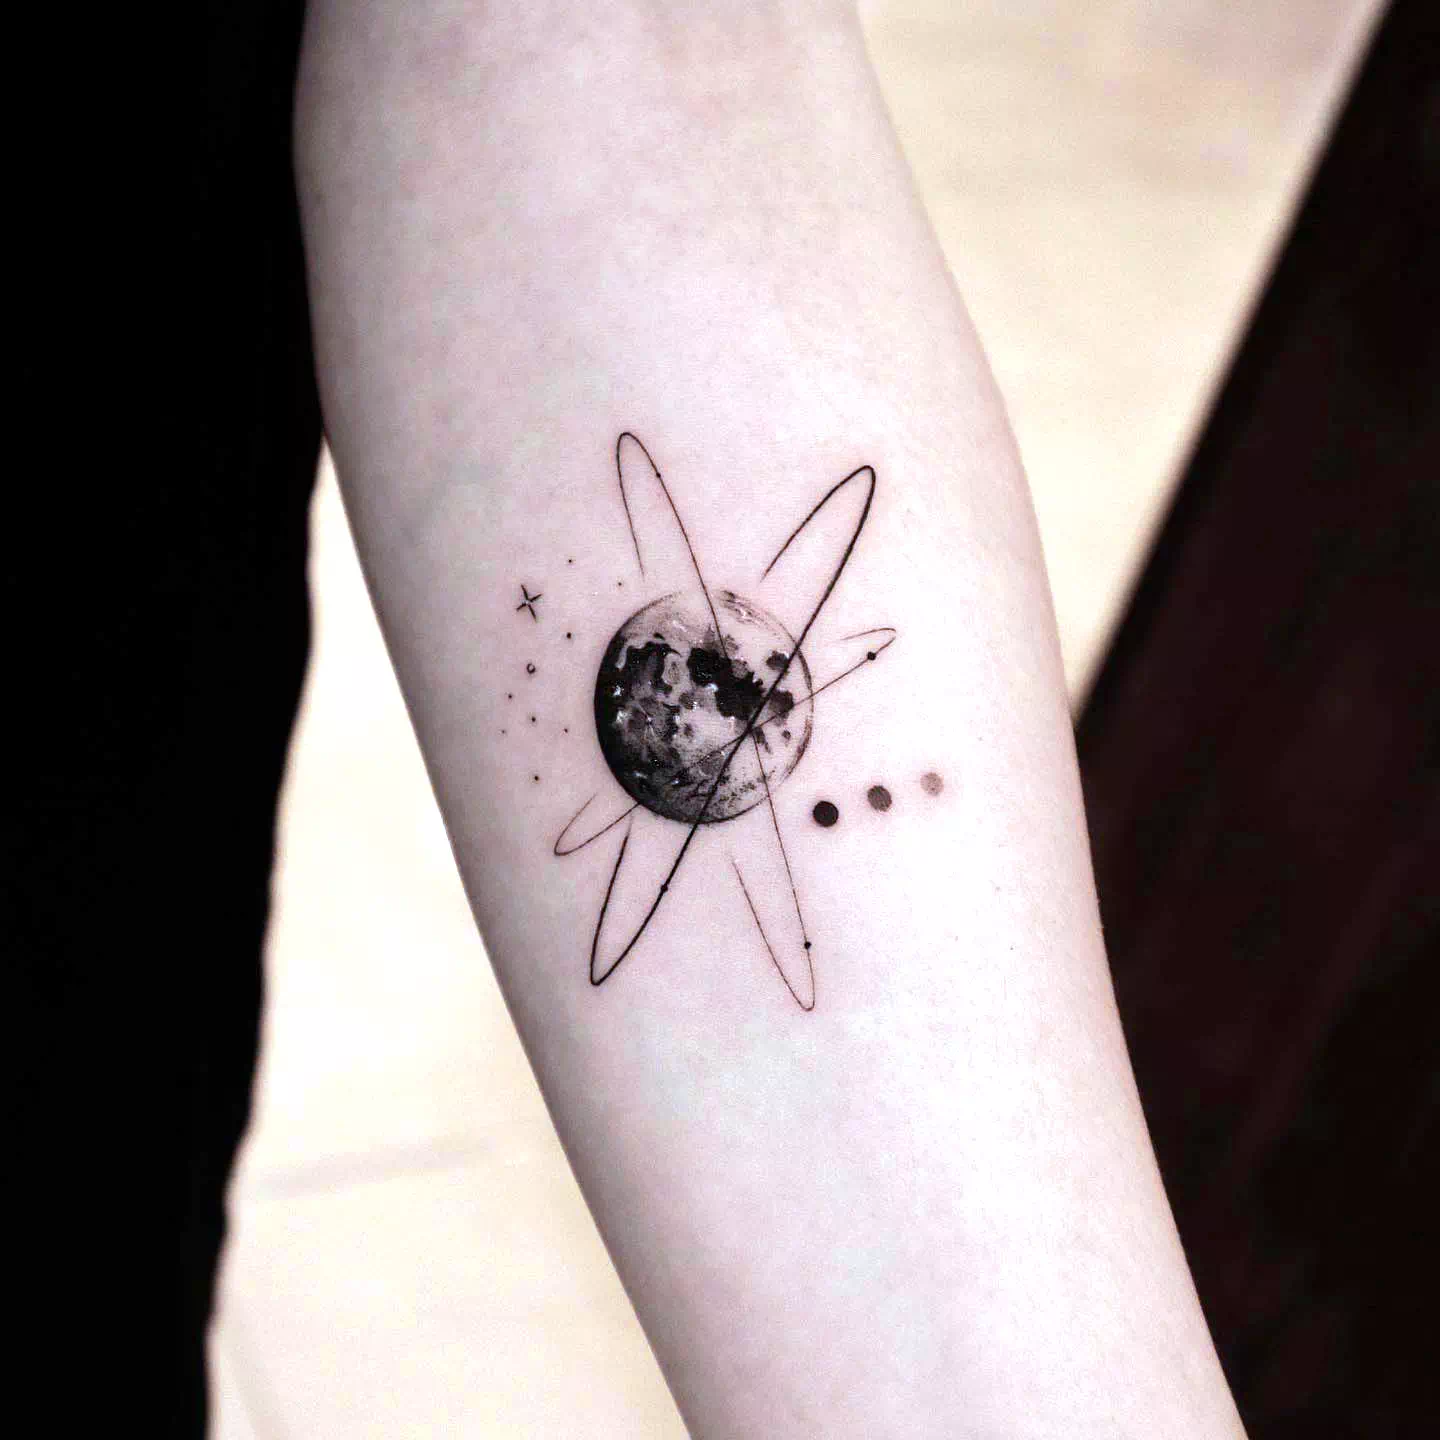 Tatuaje de luna llena 2